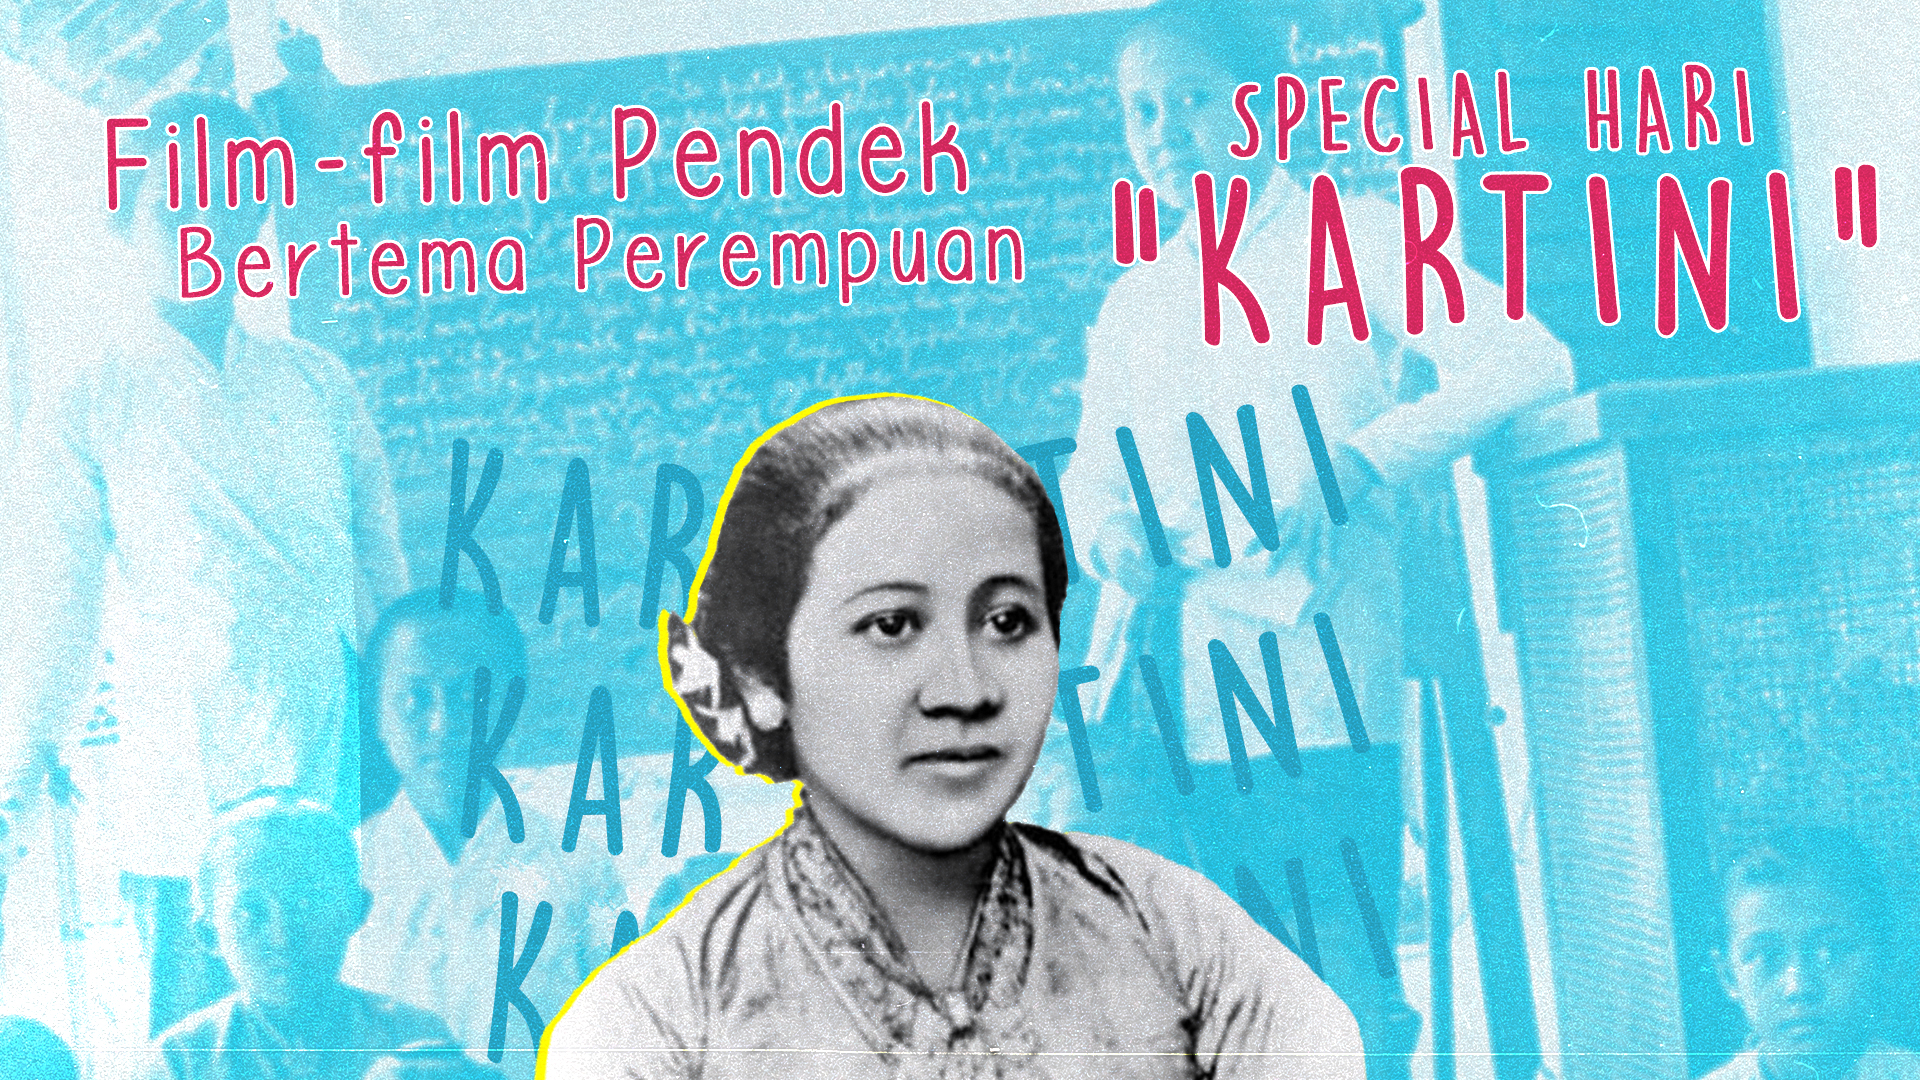 Film-film Pendek Bertema Perempuan, Spesial Hari Kartini